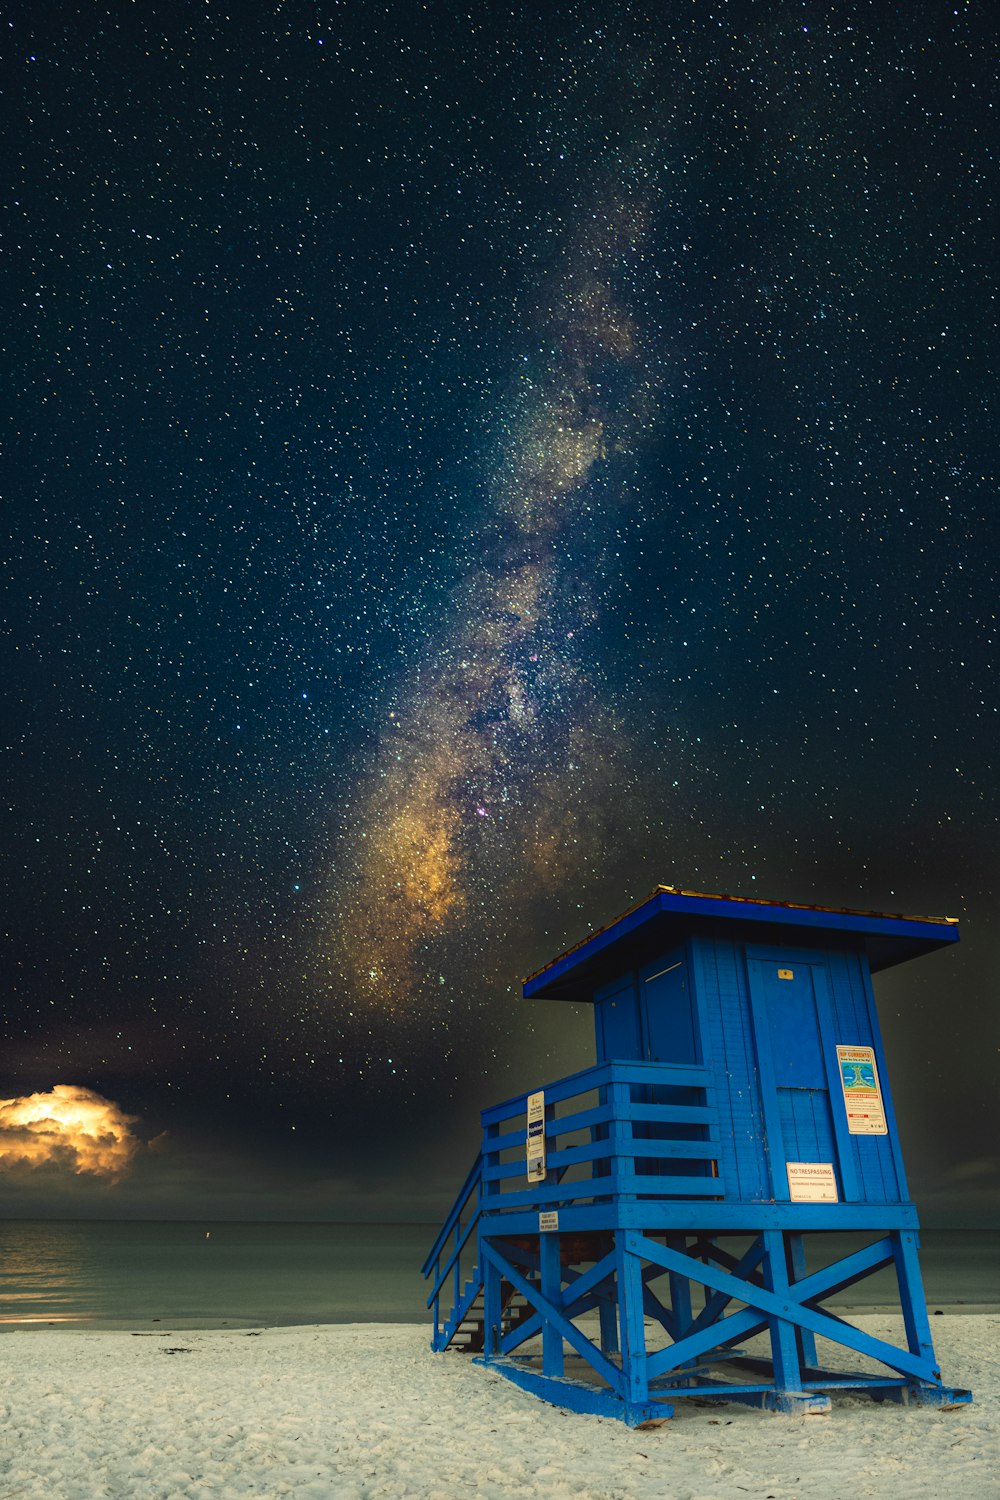 Una choza azul en una playa con estrellas en el cielo